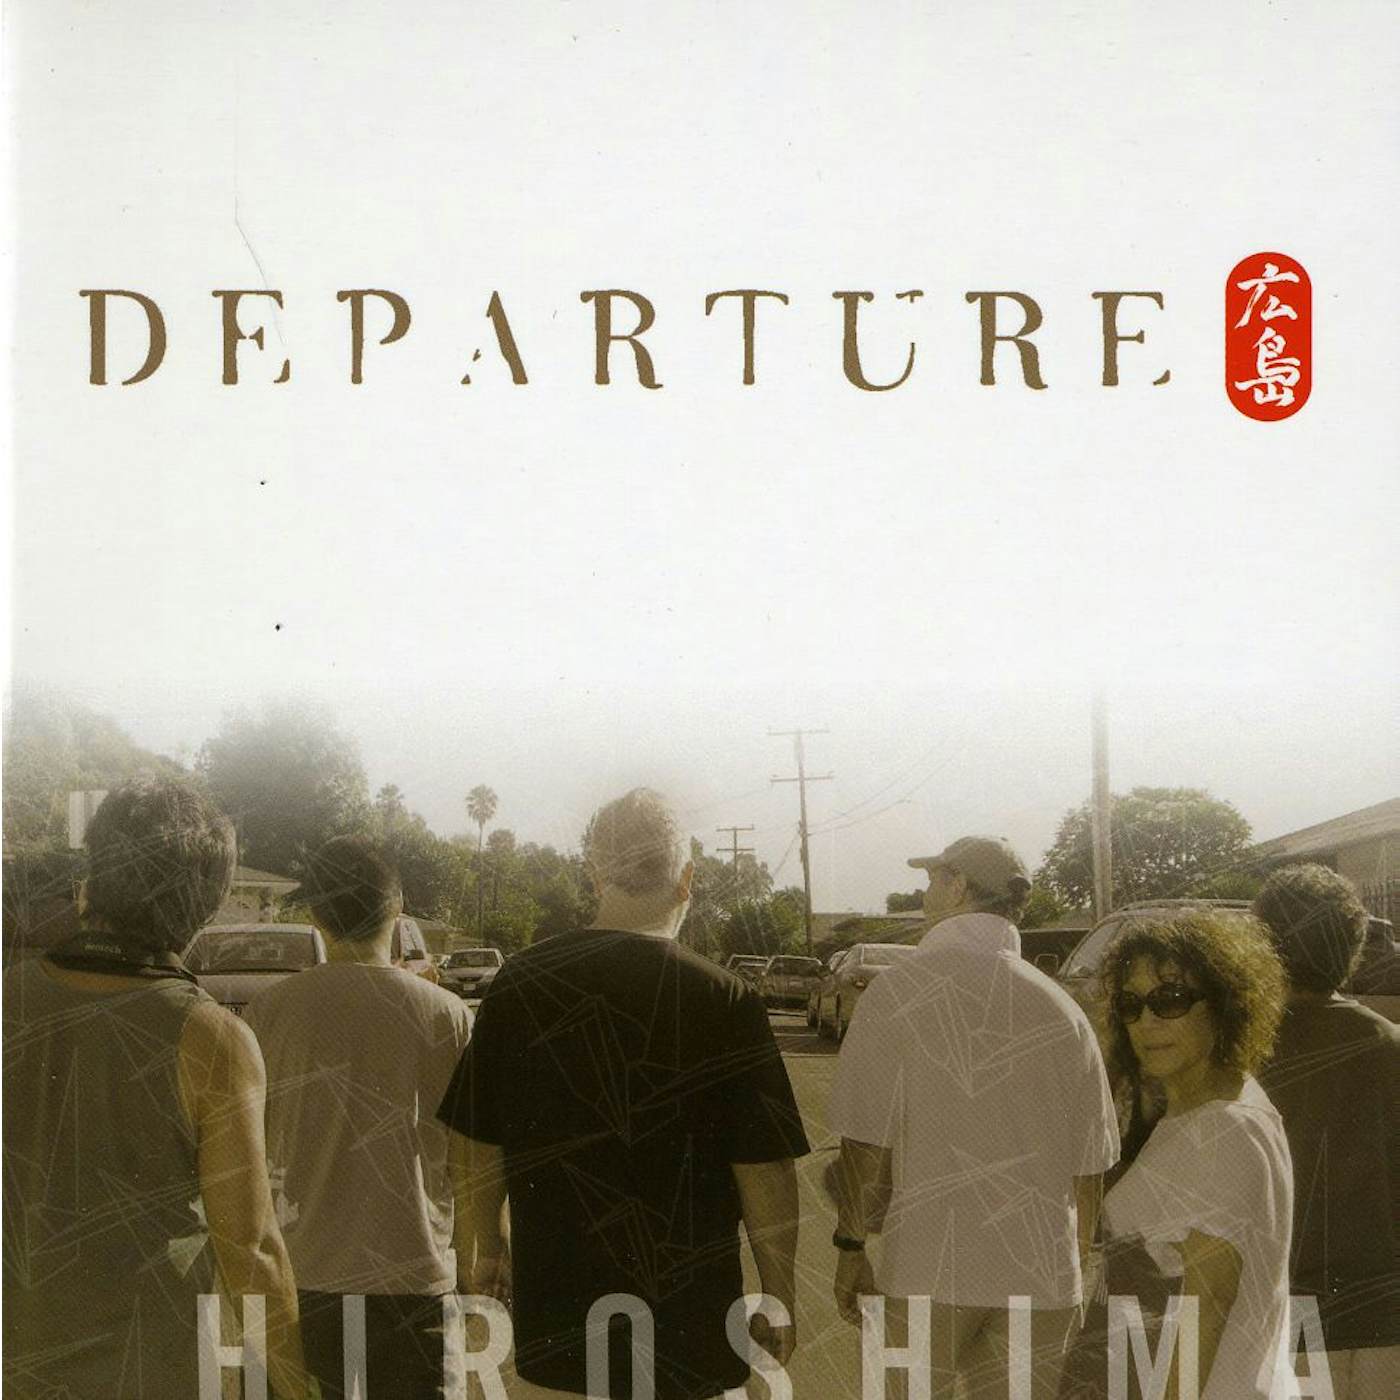 Hiroshima DEPARTURE CD